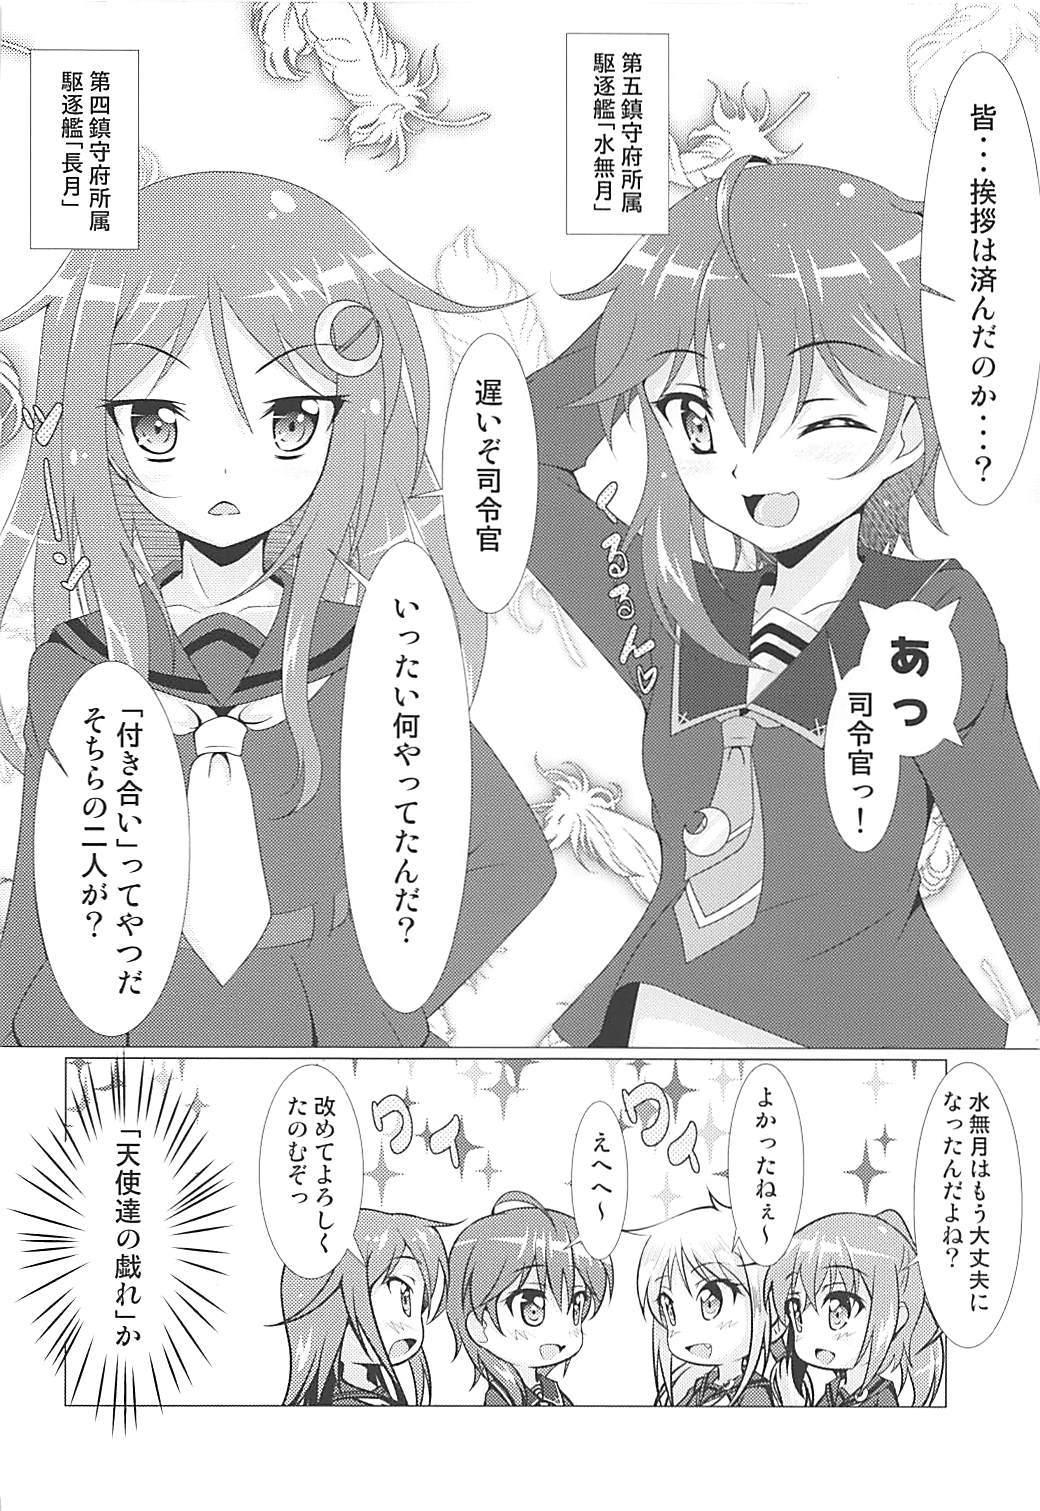 She 2+2=Minazuki/Nagatsuki #01 - Kantai collection Sentones - Page 7